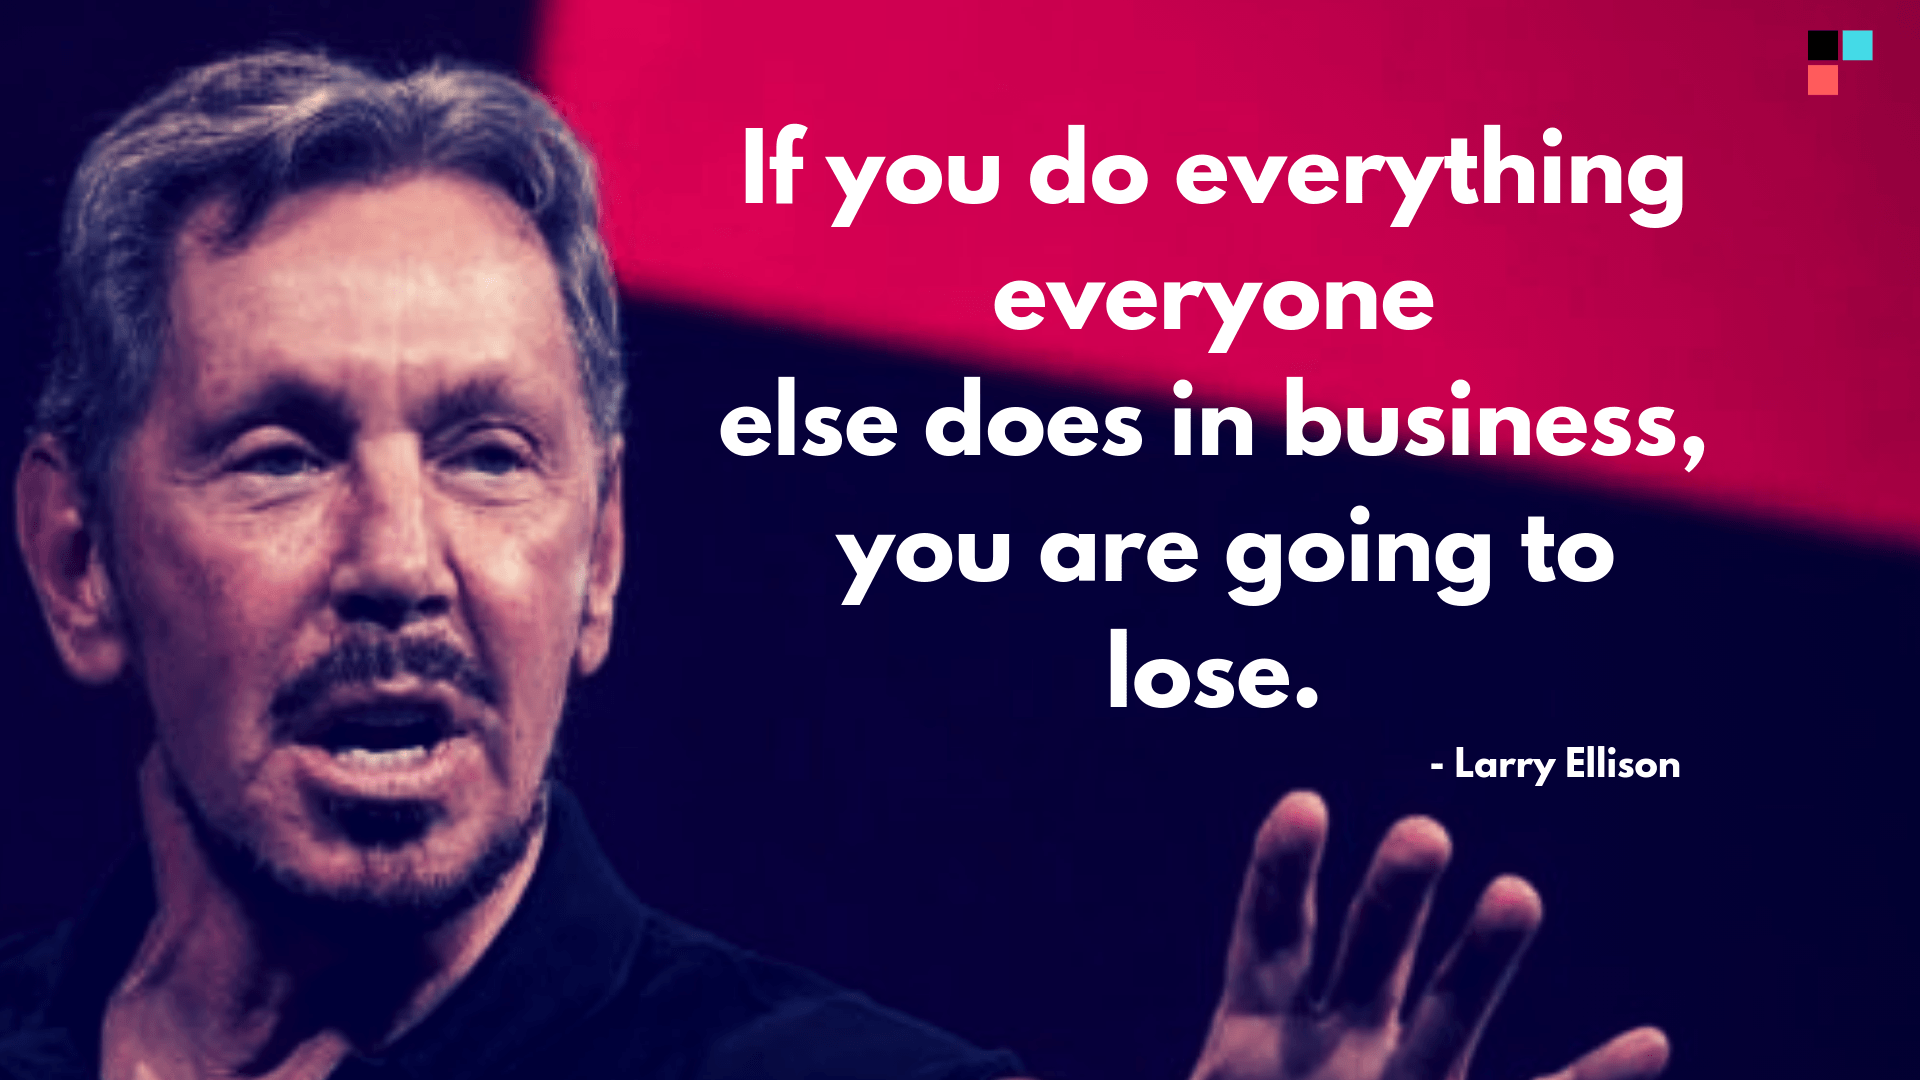 Entrepreneur quotes from Larry Ellison